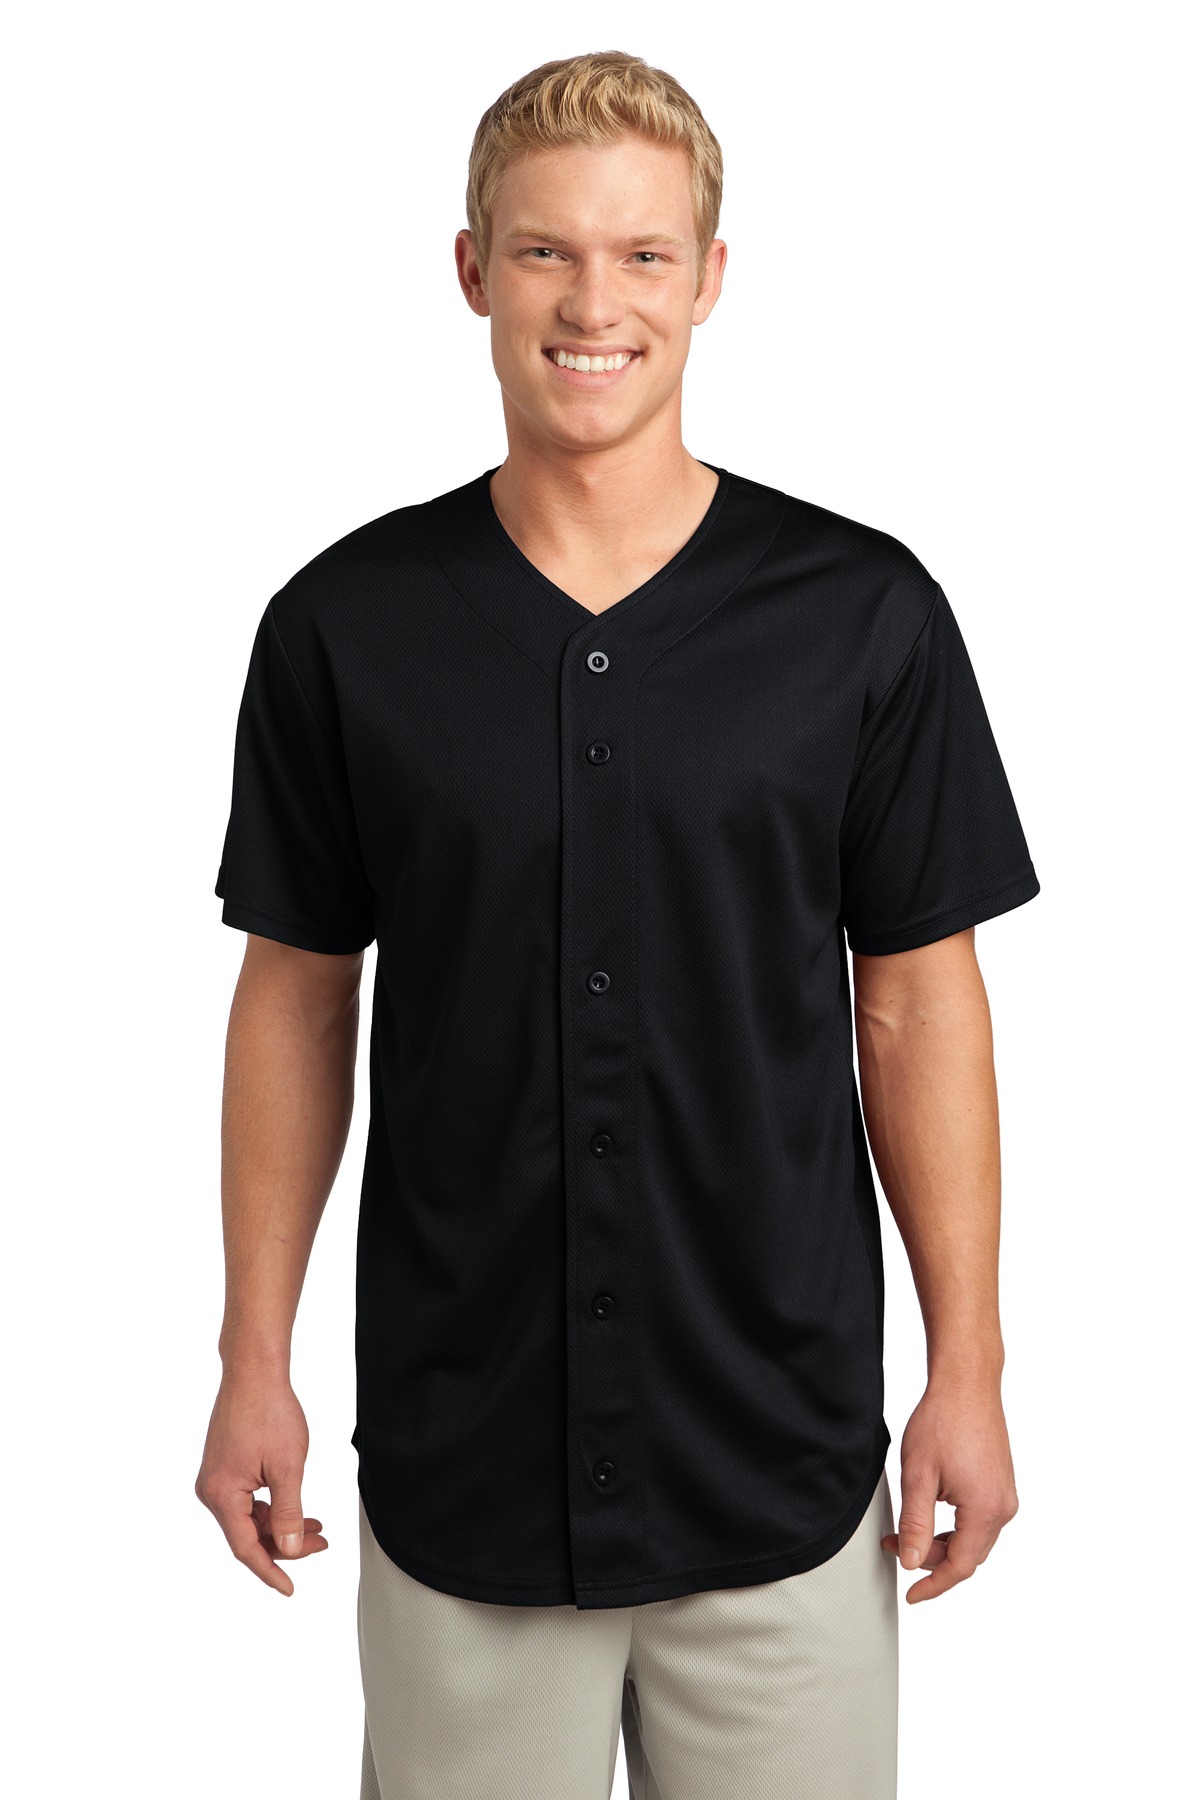 Adult Full Button Lightweight Baseball Jersey